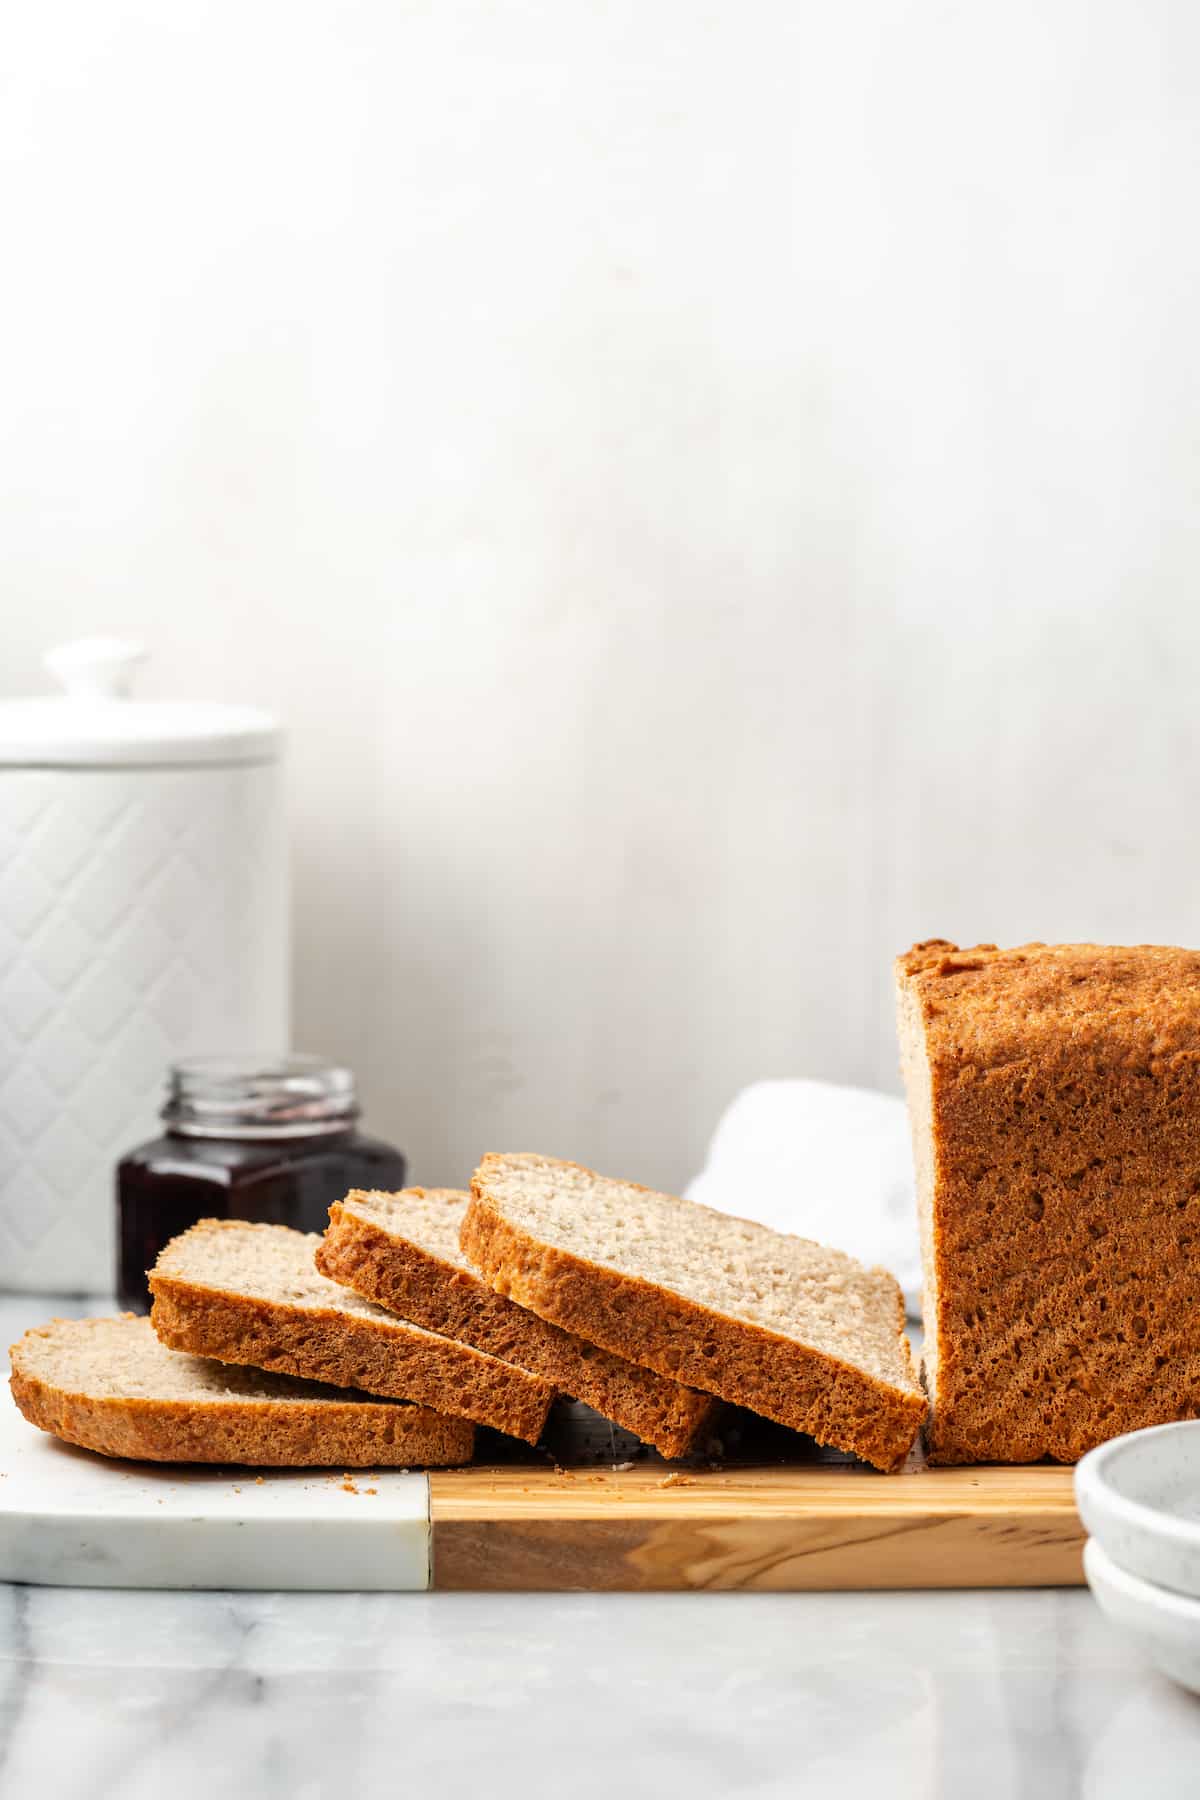 Side view of sliced gluten-free sandwich bread